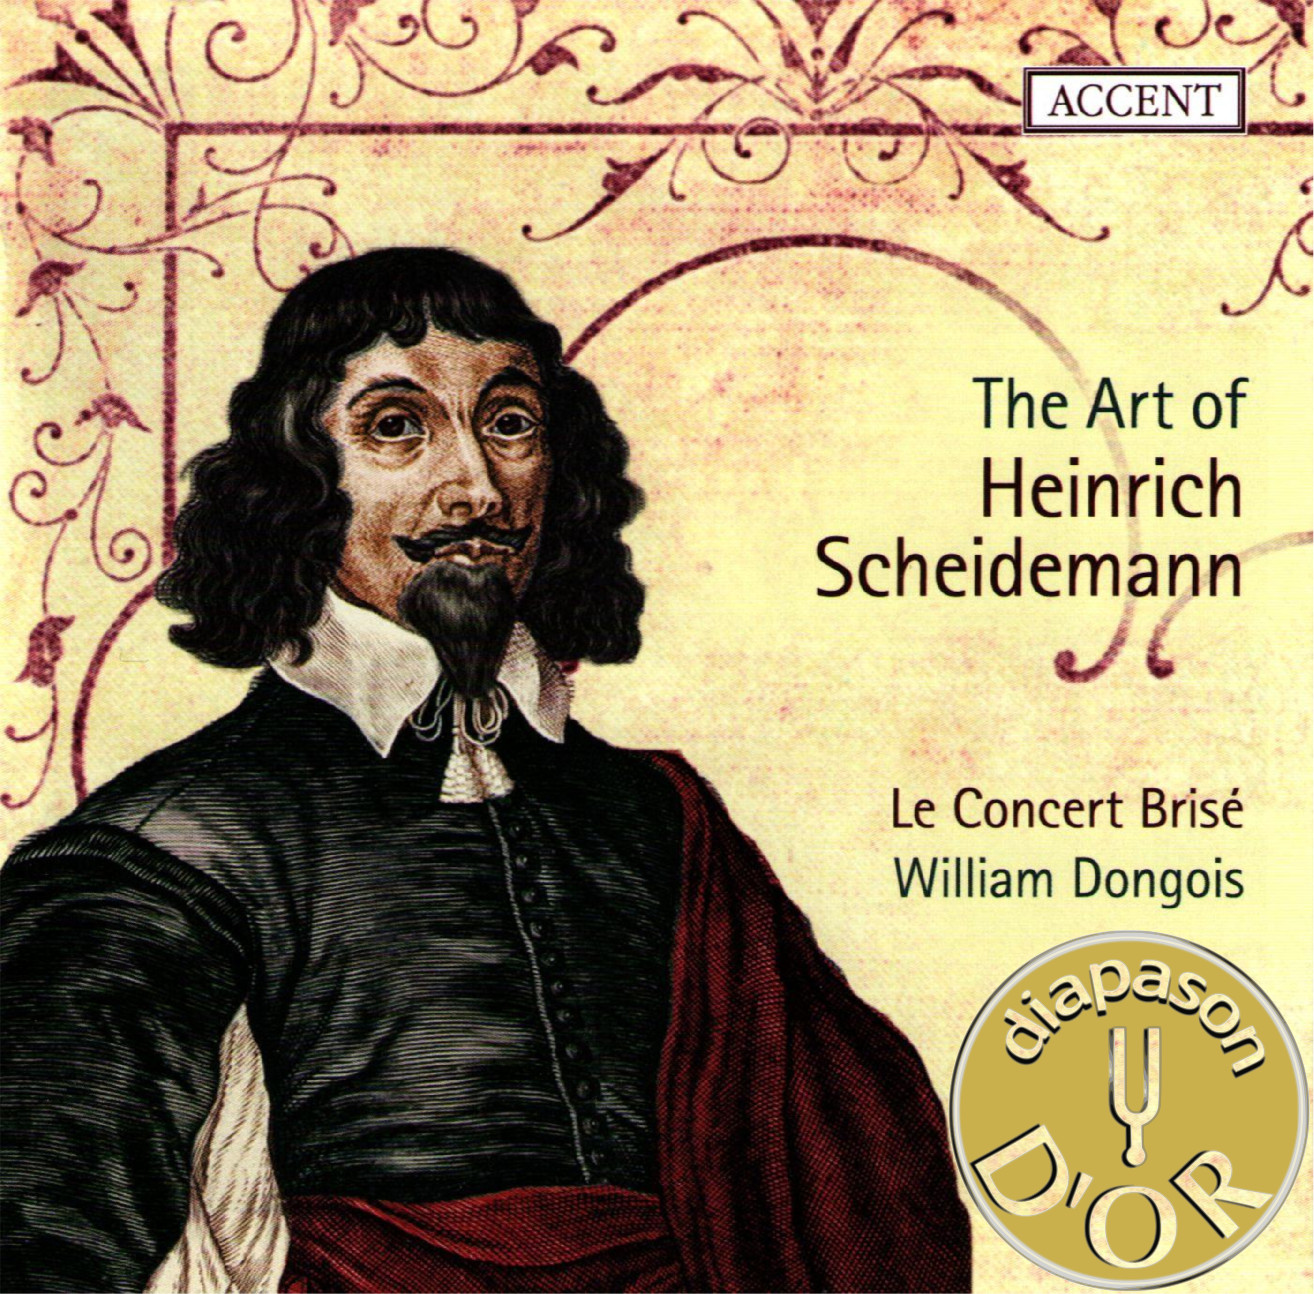 The Art of Heinrich Scheidemann